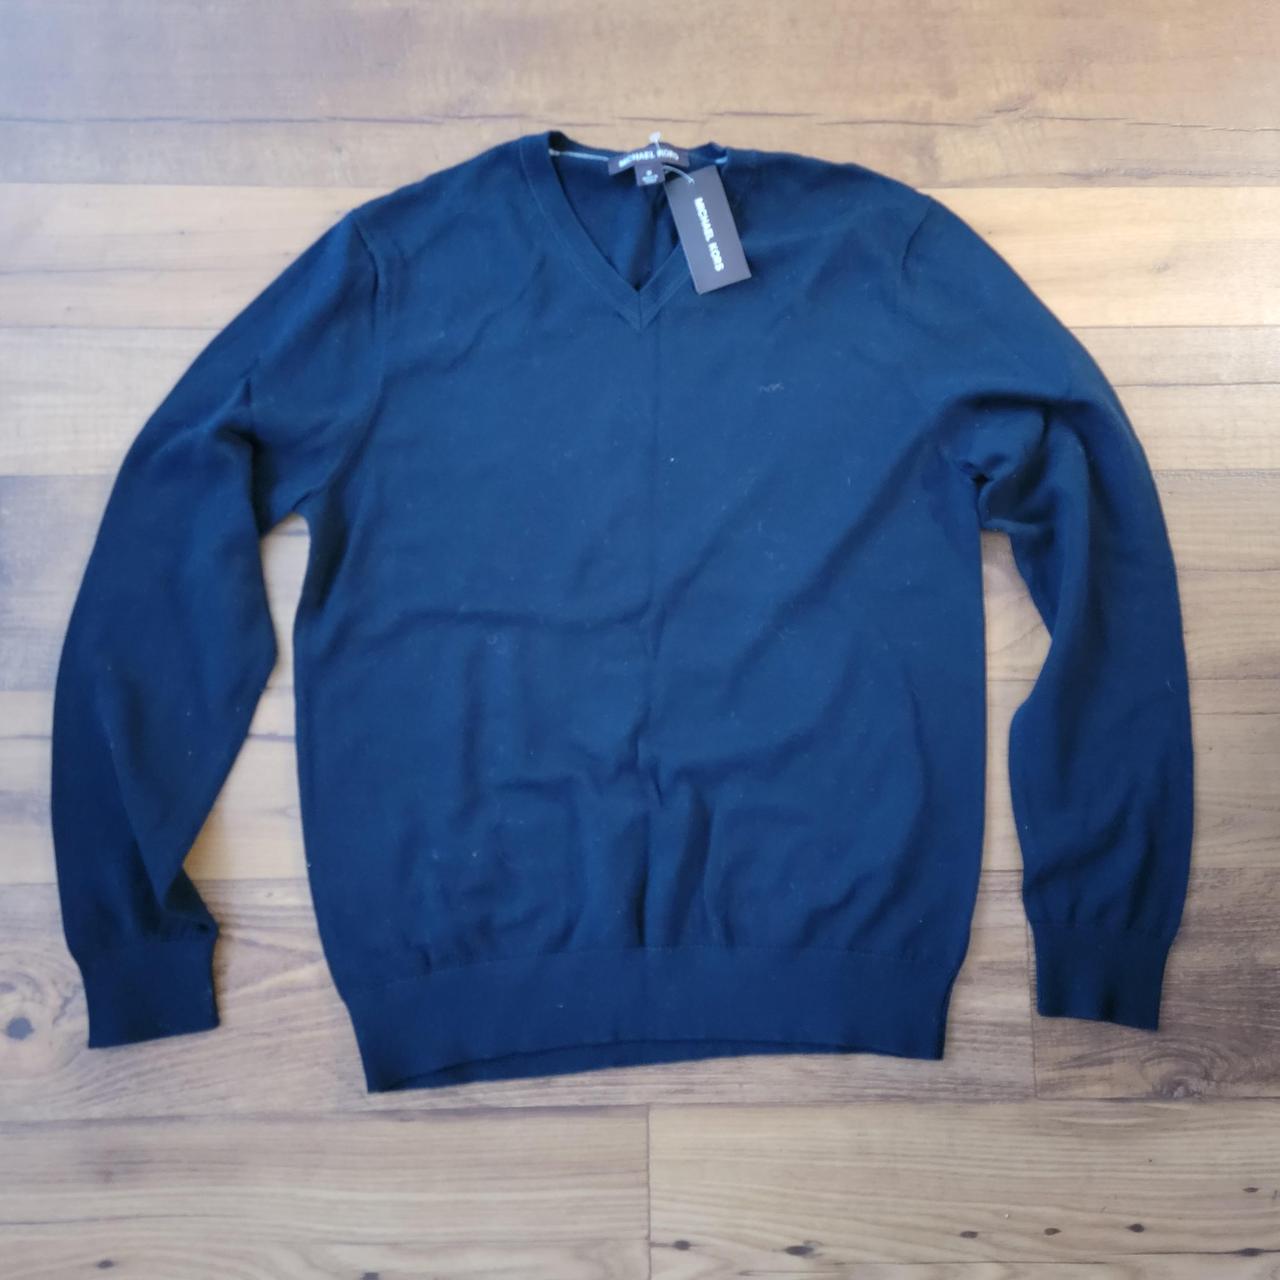 New Men's Michael Kors Navy Sweater - Size... - Depop